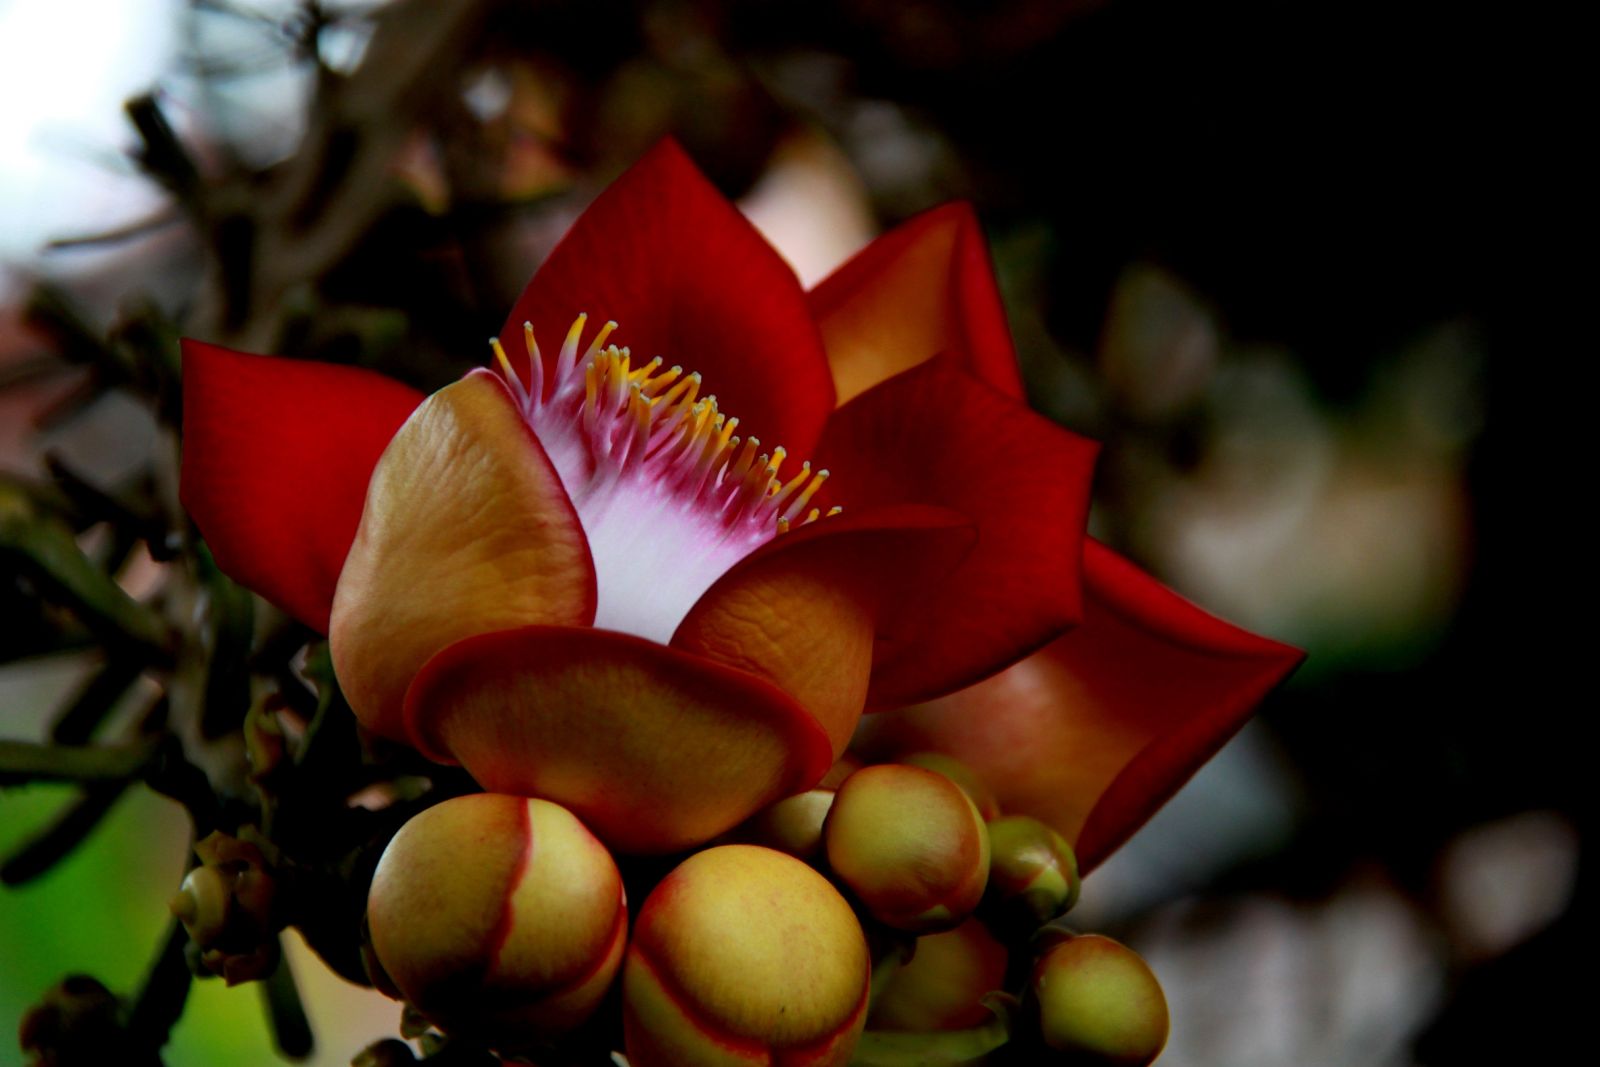 Tổng hợp những hình ảnh đẹp nhất về hoa sala – Hoa quý linh thiêng nơi cửa Phật - [Kích thước hình ảnh: 1600x1067 px]